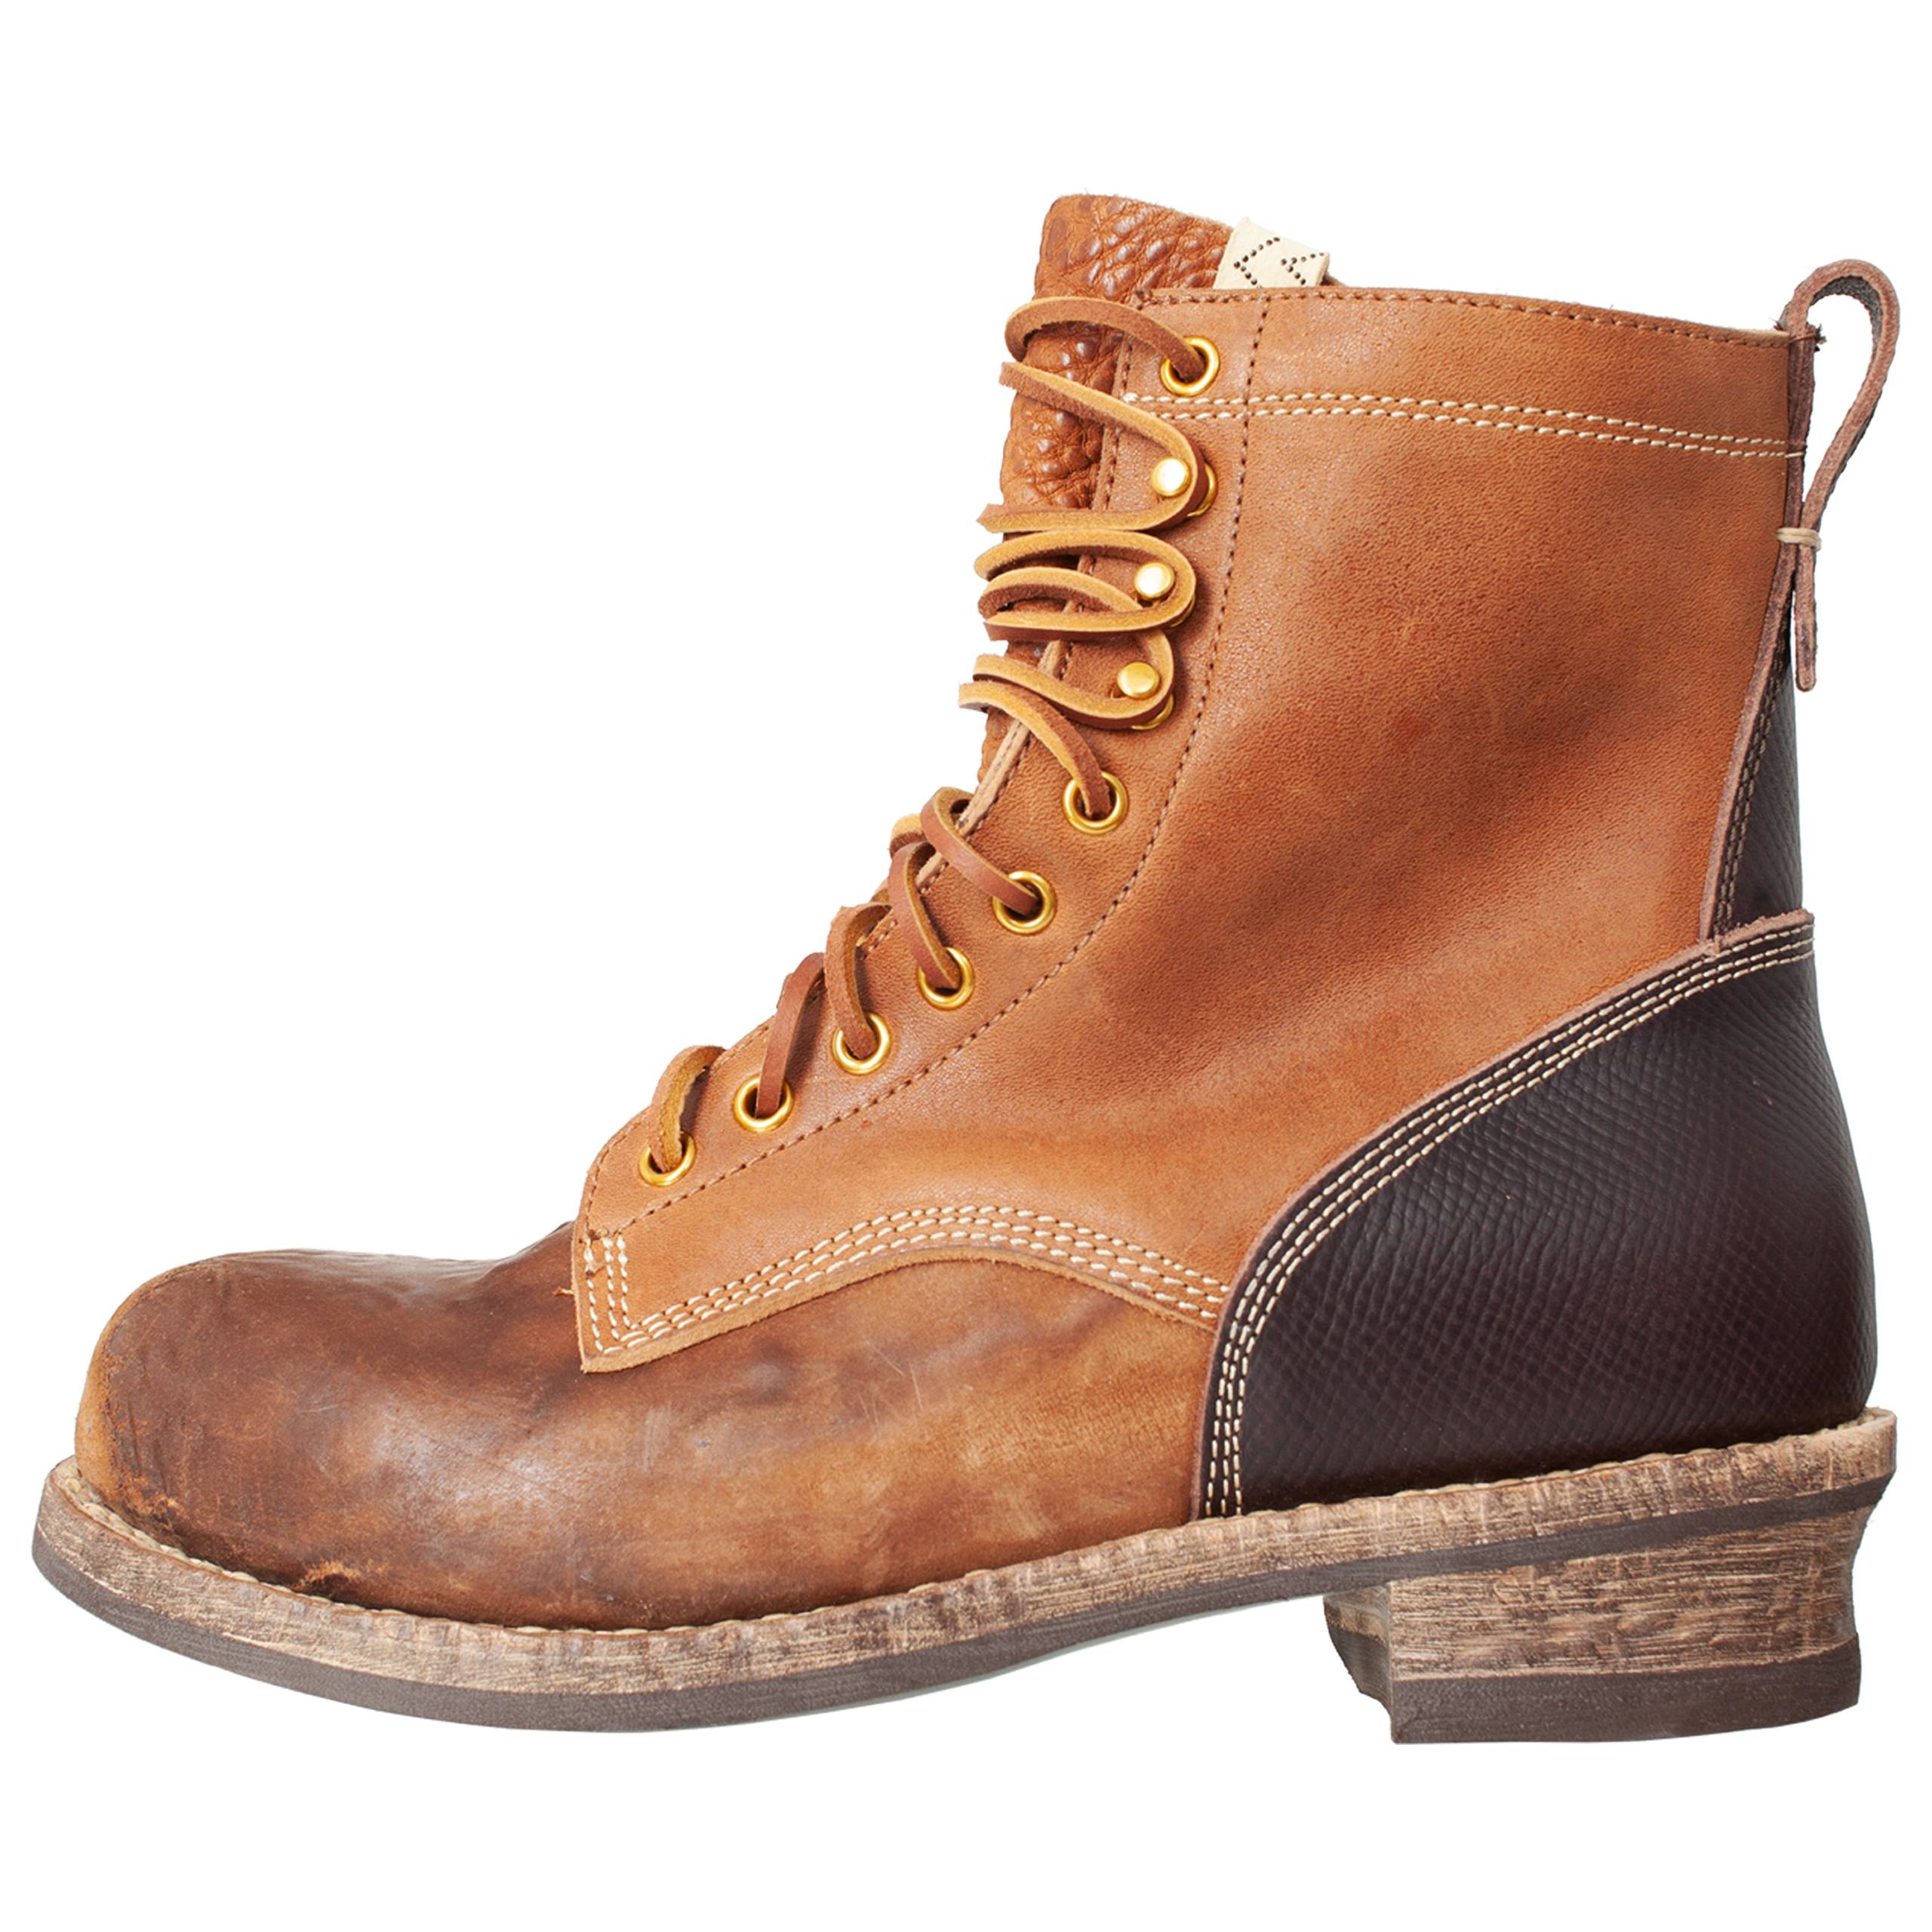 Poundmaker Folk leather boots